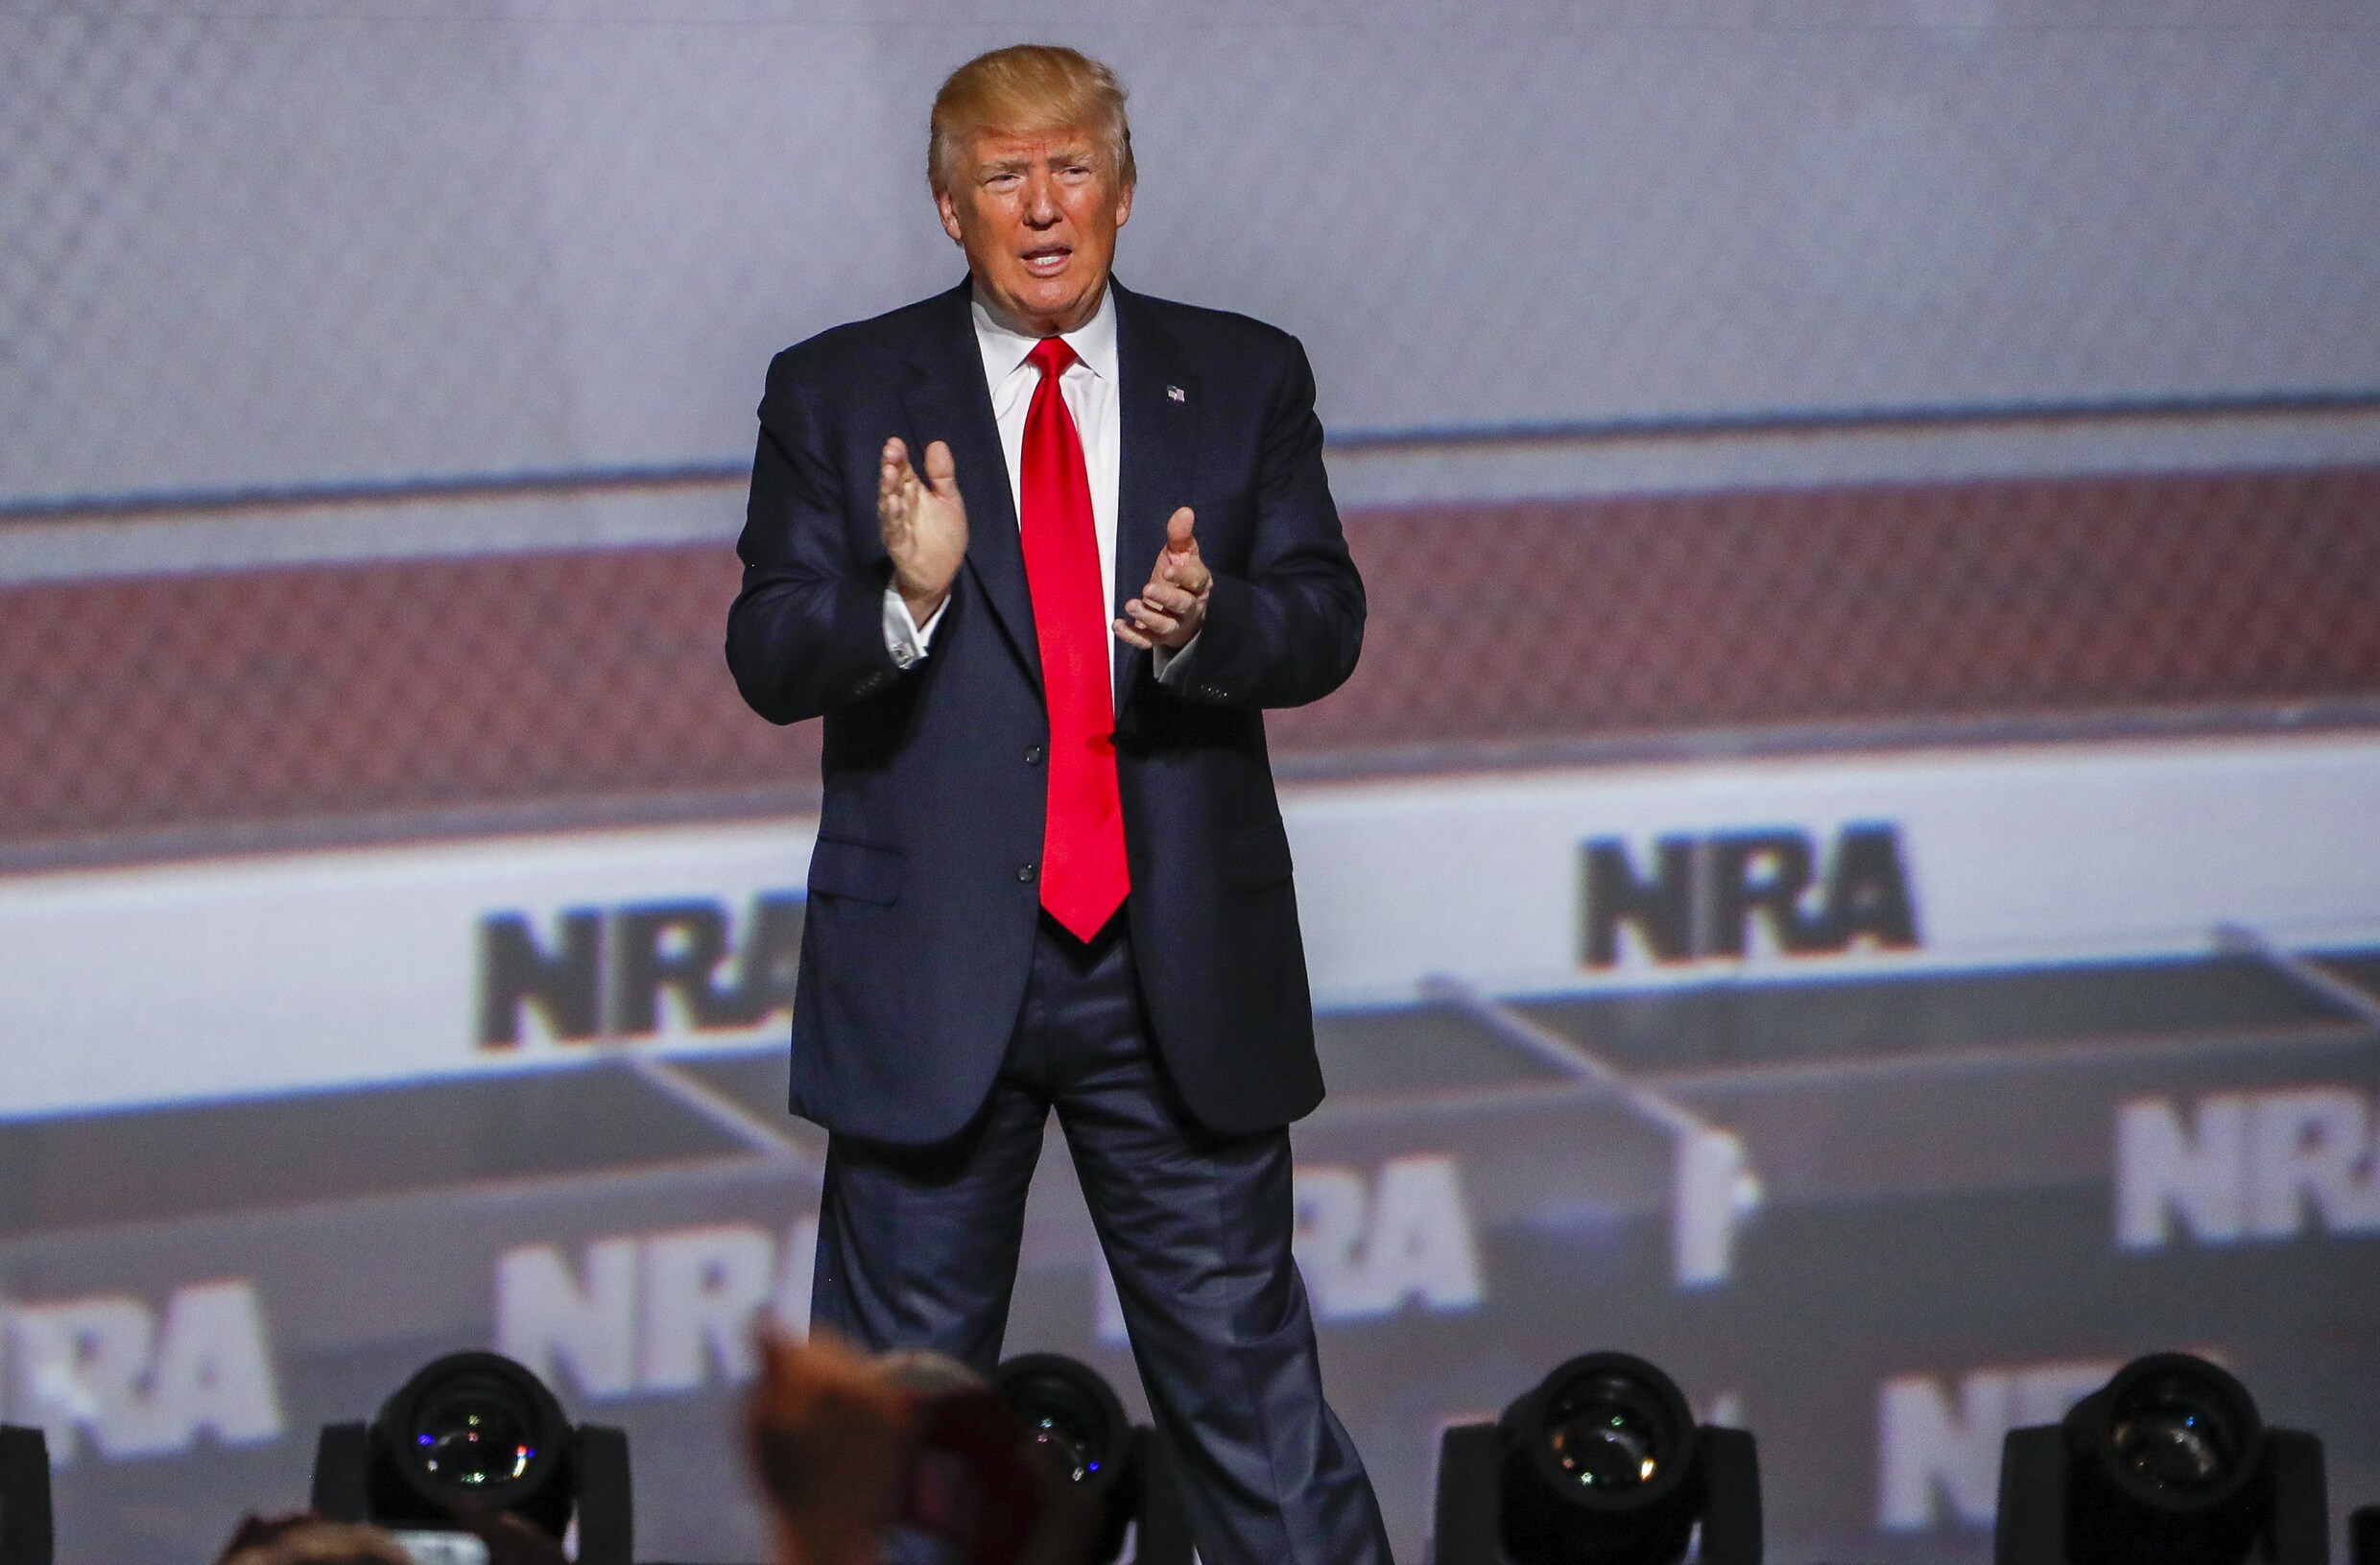 Trump op congres wapenlobby NRA: "Trust me, jullie zijn mijn vrienden"